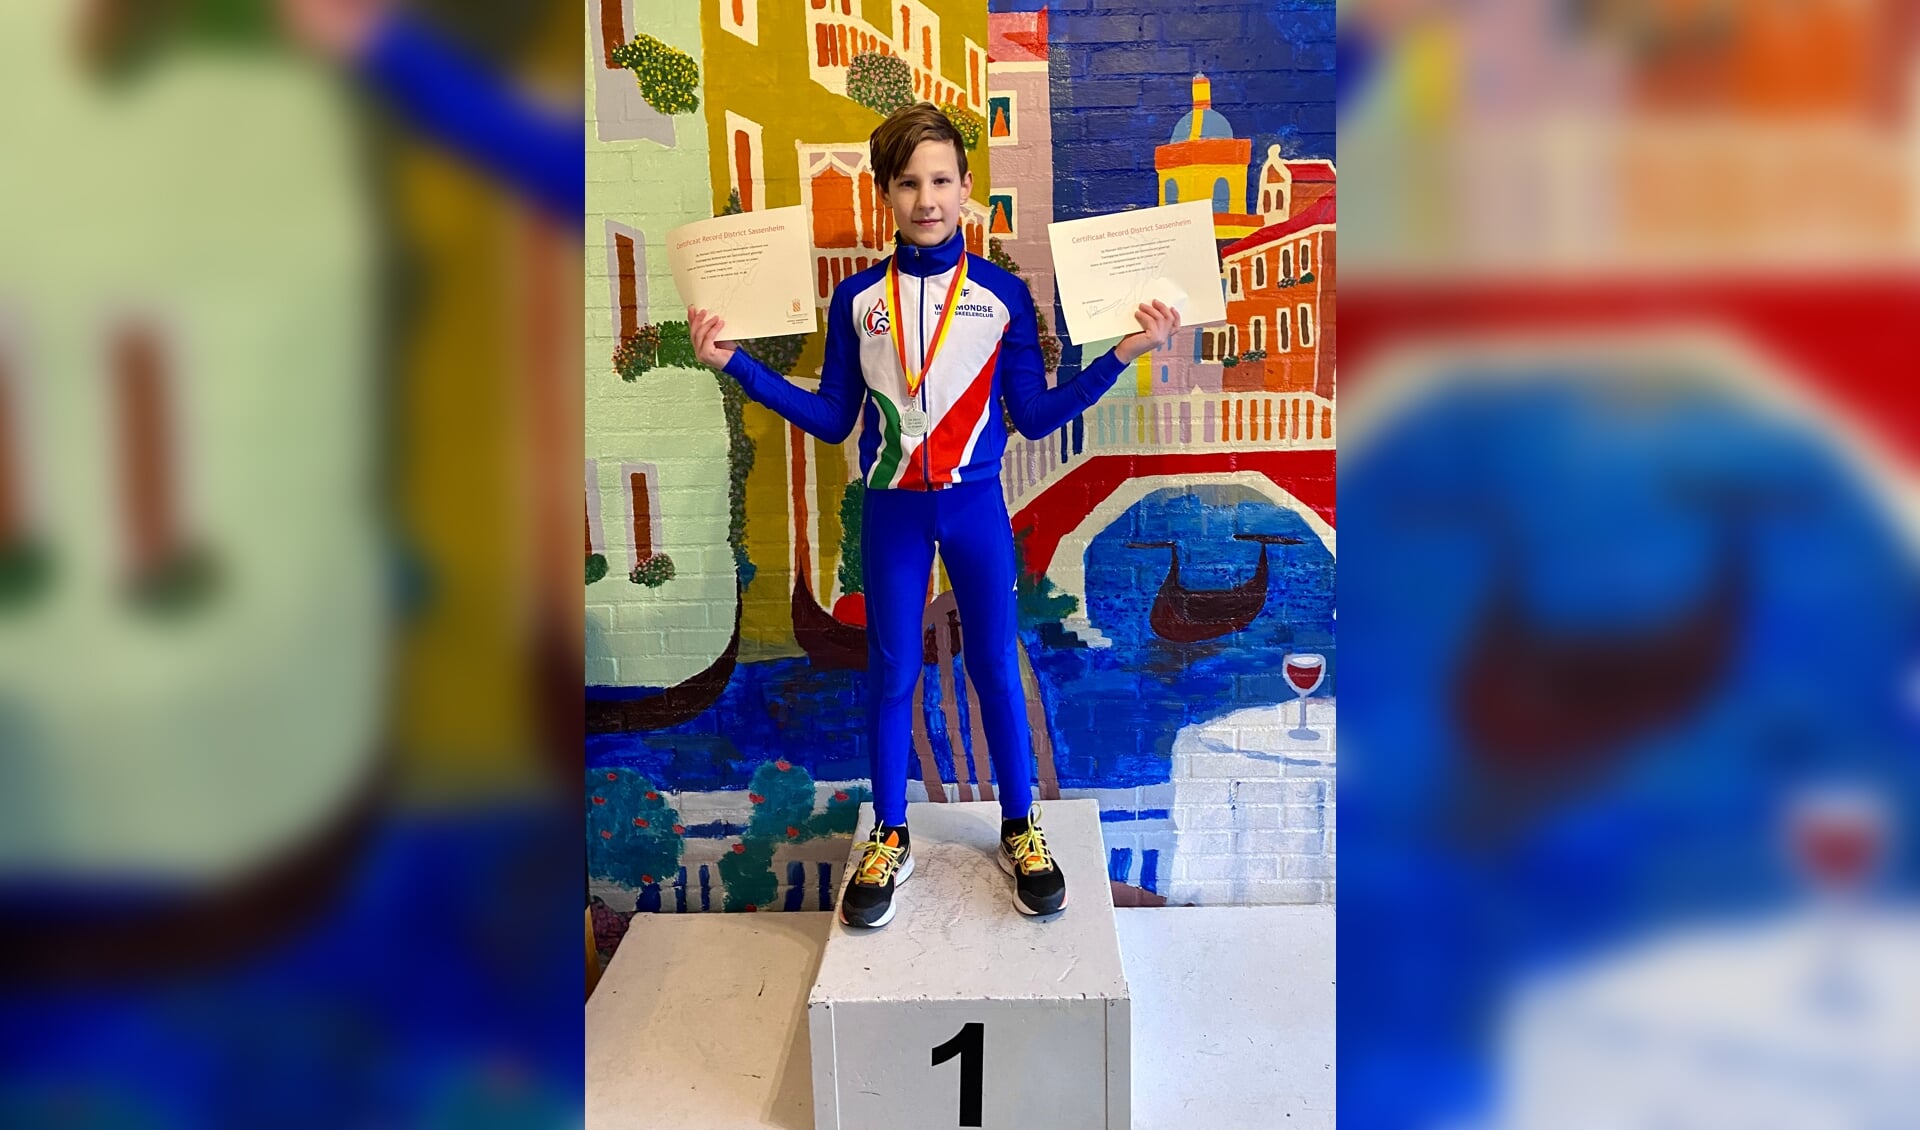 Vincent Meulmeester is districtskampioen geworden in de categorie jongens mini's.